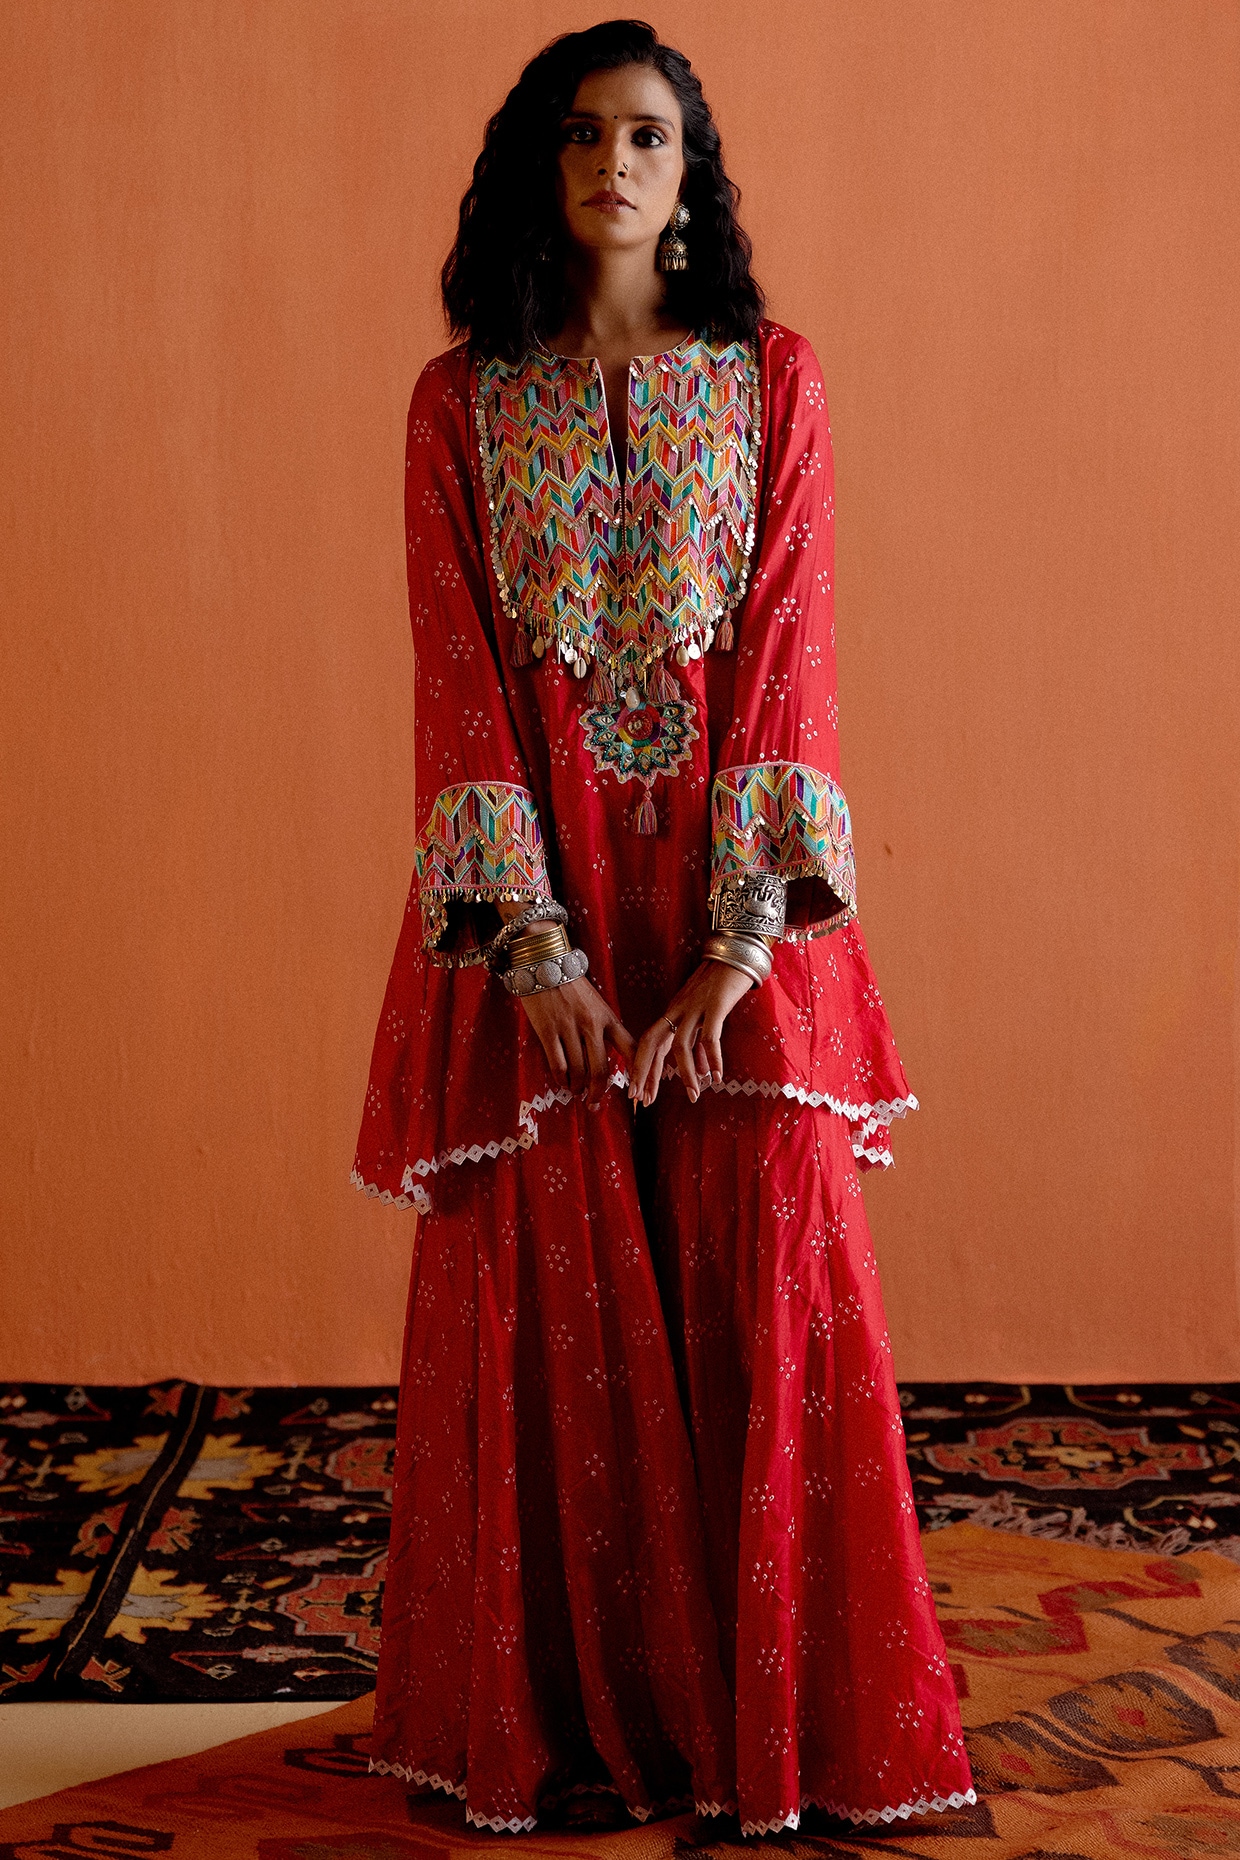 İndian fashion | Indian bridal lehenga, Indian bridal, Bride suit